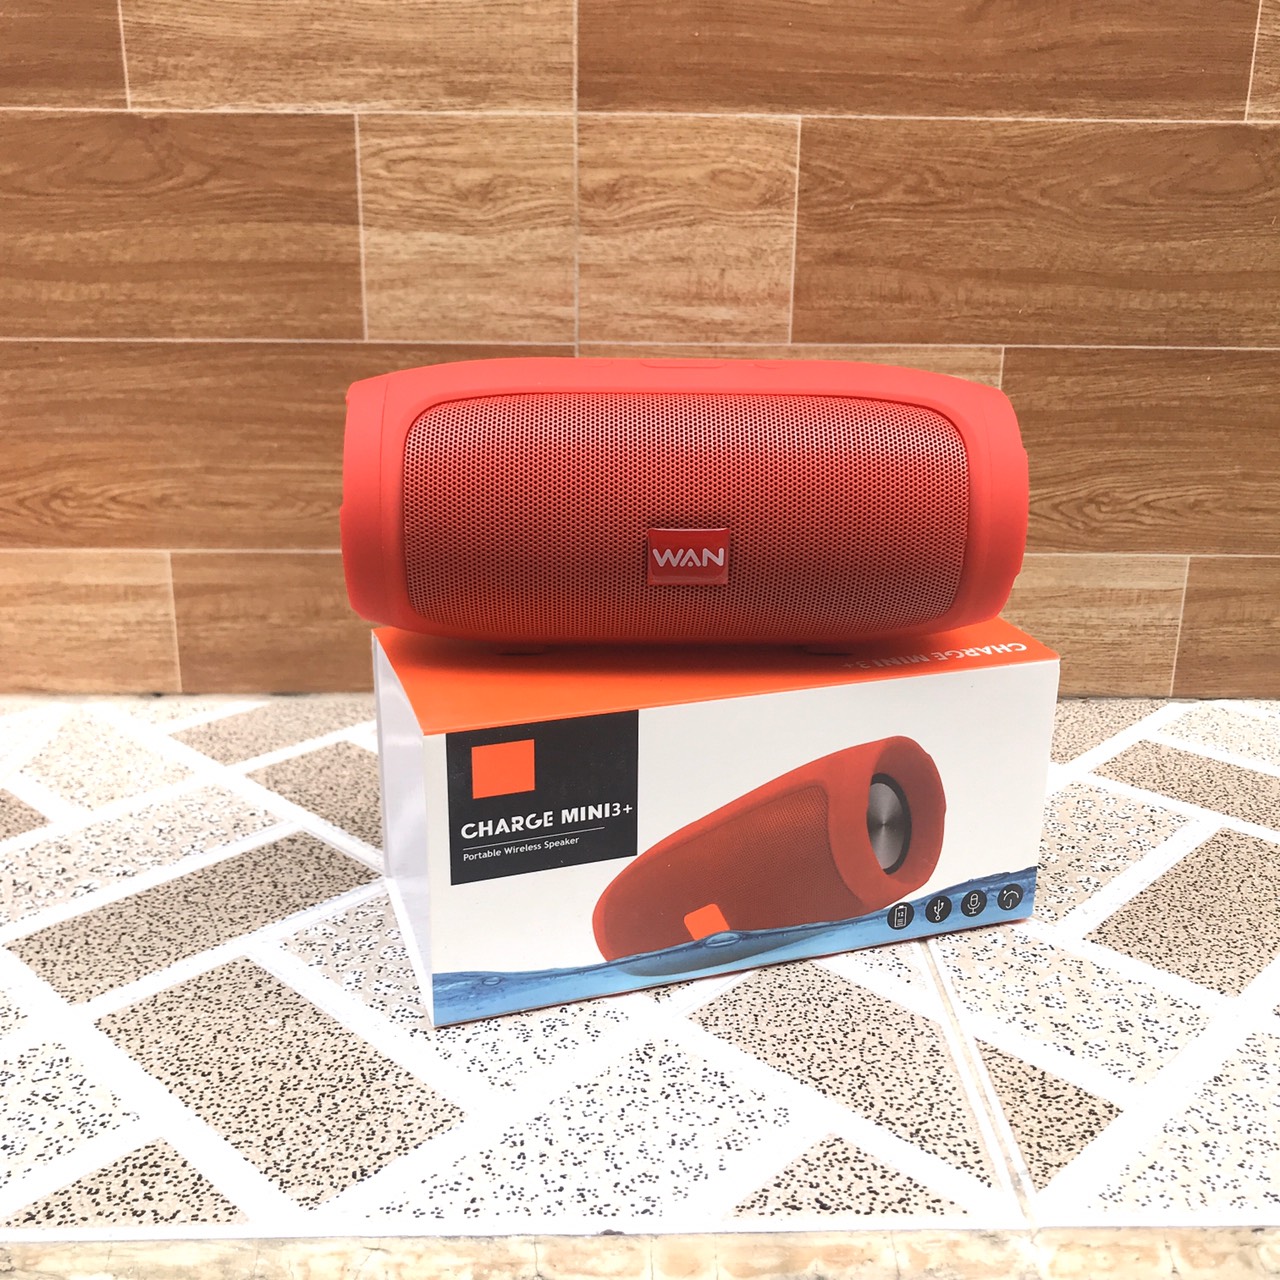 Mua Loa Bluetooth WAN Charge mini 3+ A3 (Màu đỏ), nghe nhạc hay pin trâu -  Hàng chính hãng tại ThuyDungShop2002